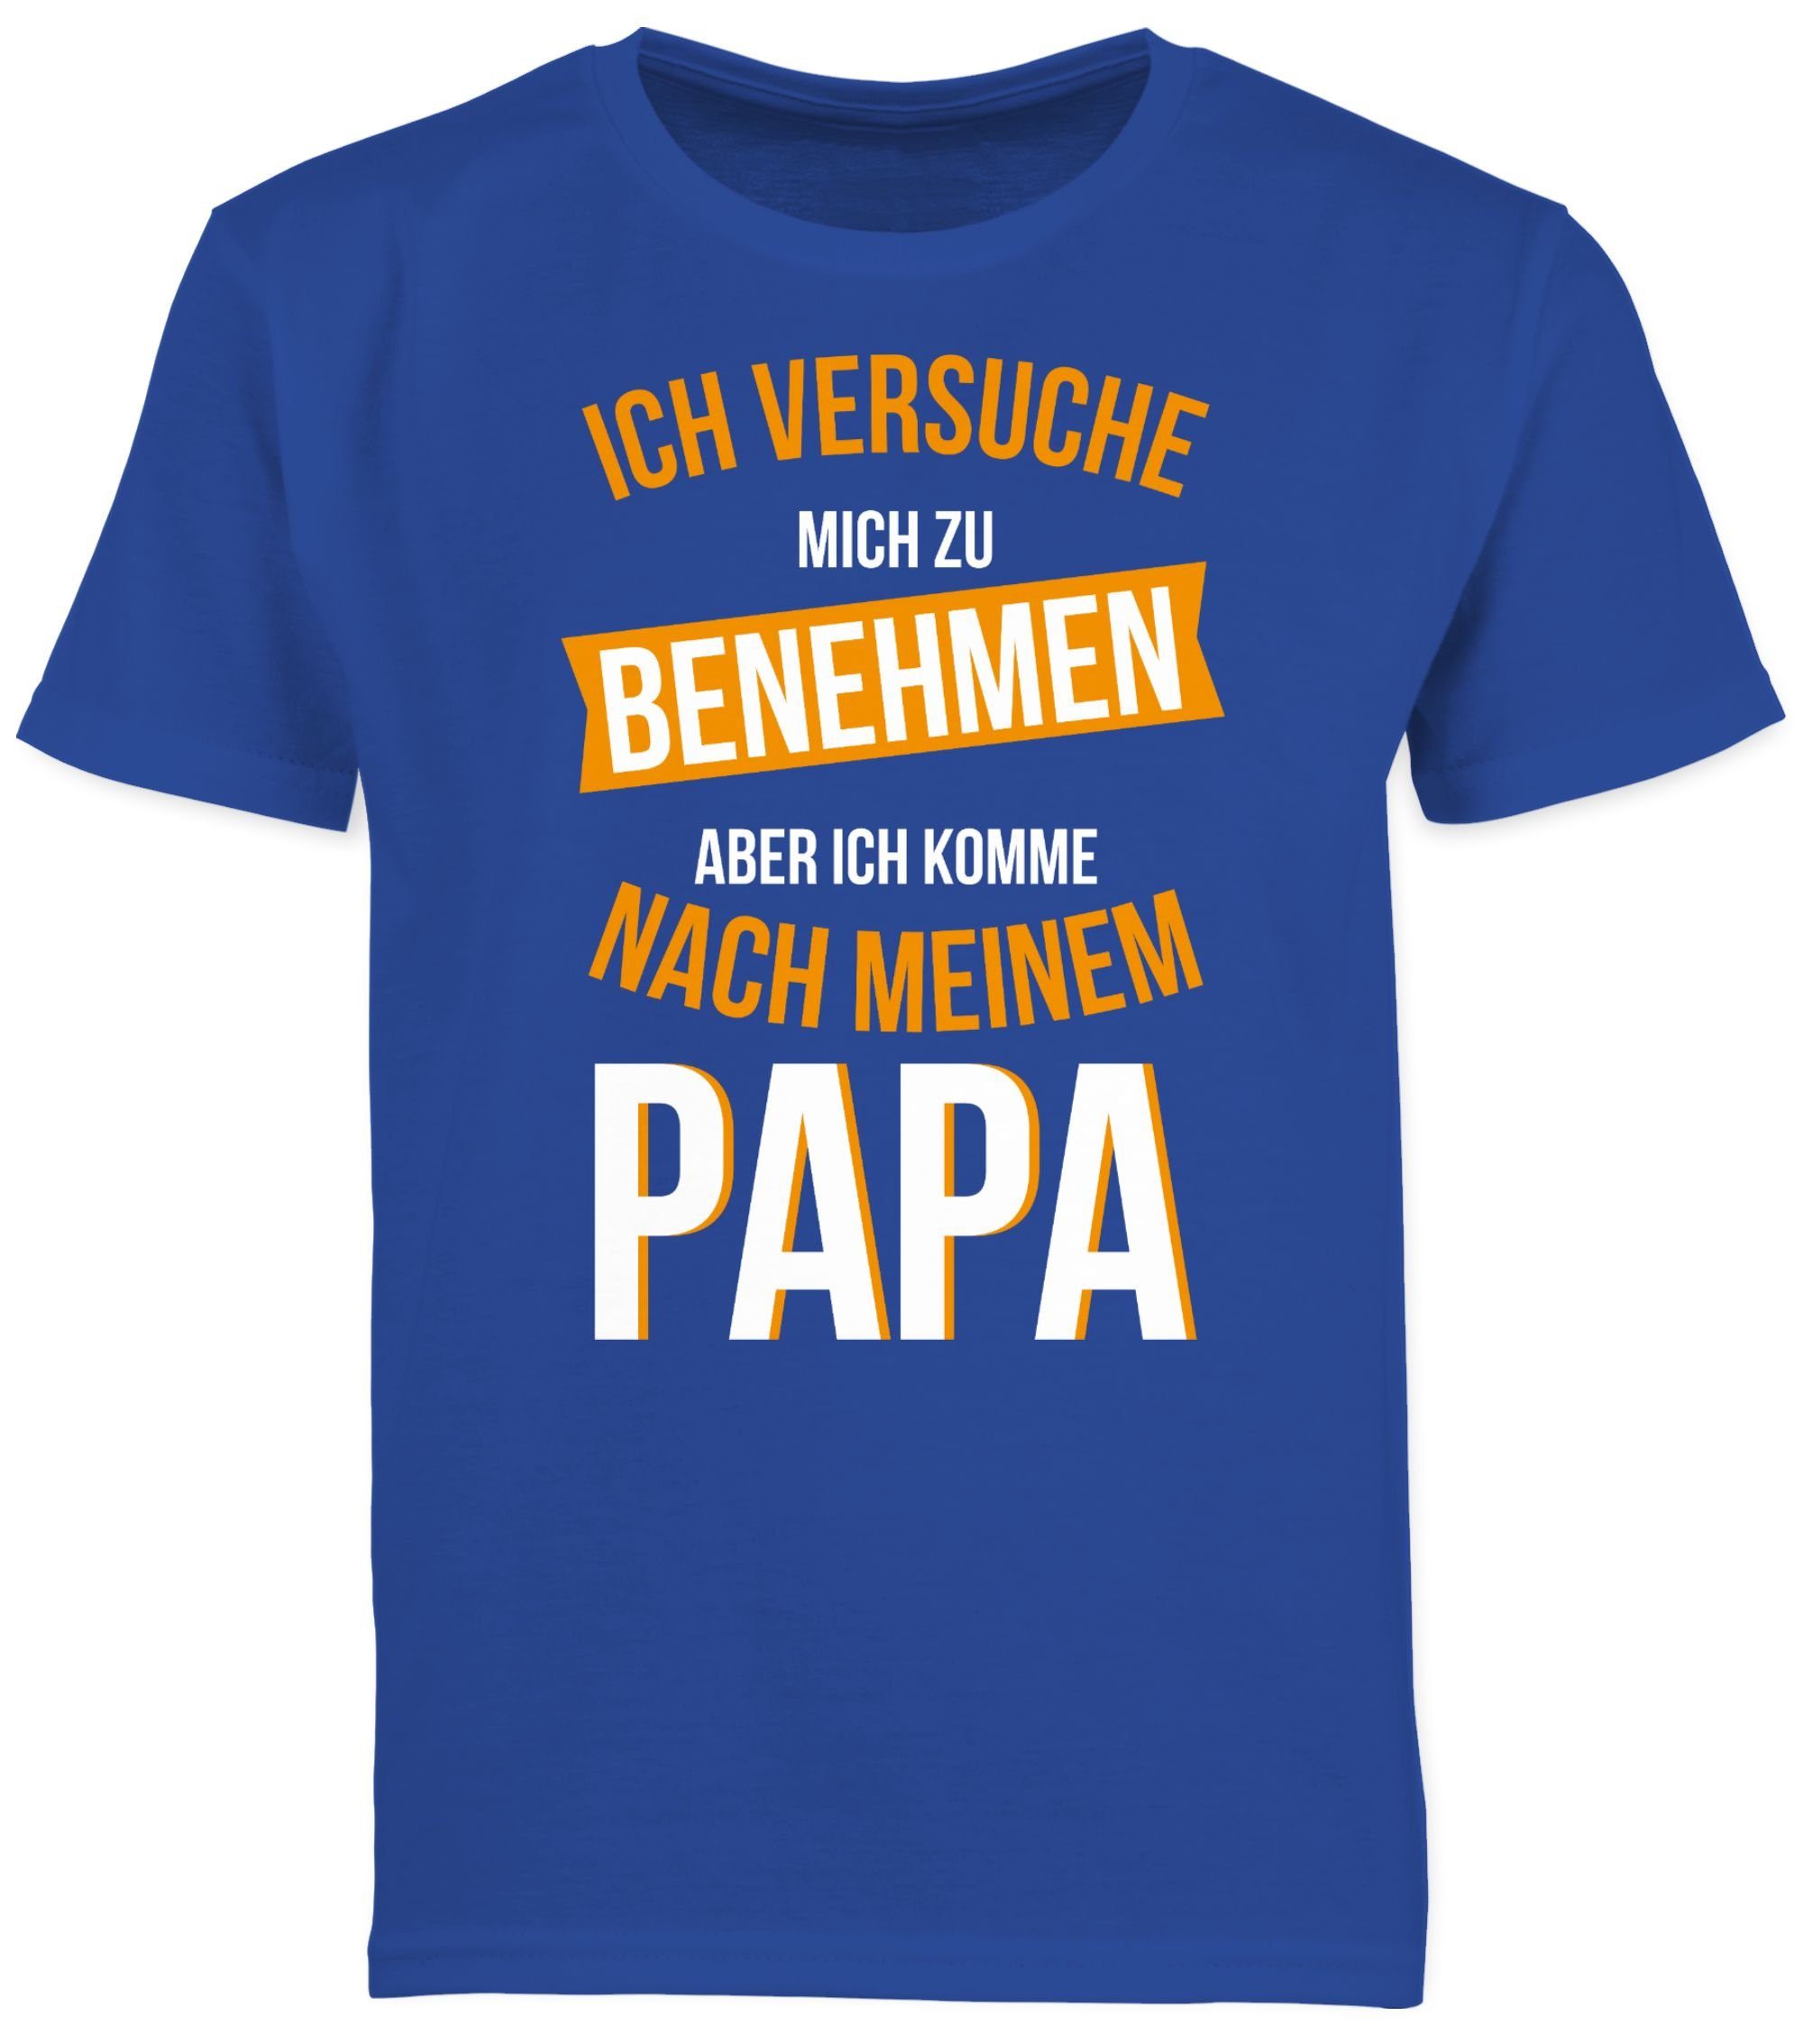 Shirtracer T-Shirt Versuche mich zu nach 2 komme Papa Royalblau benehmen Sprüche Kinder Statement